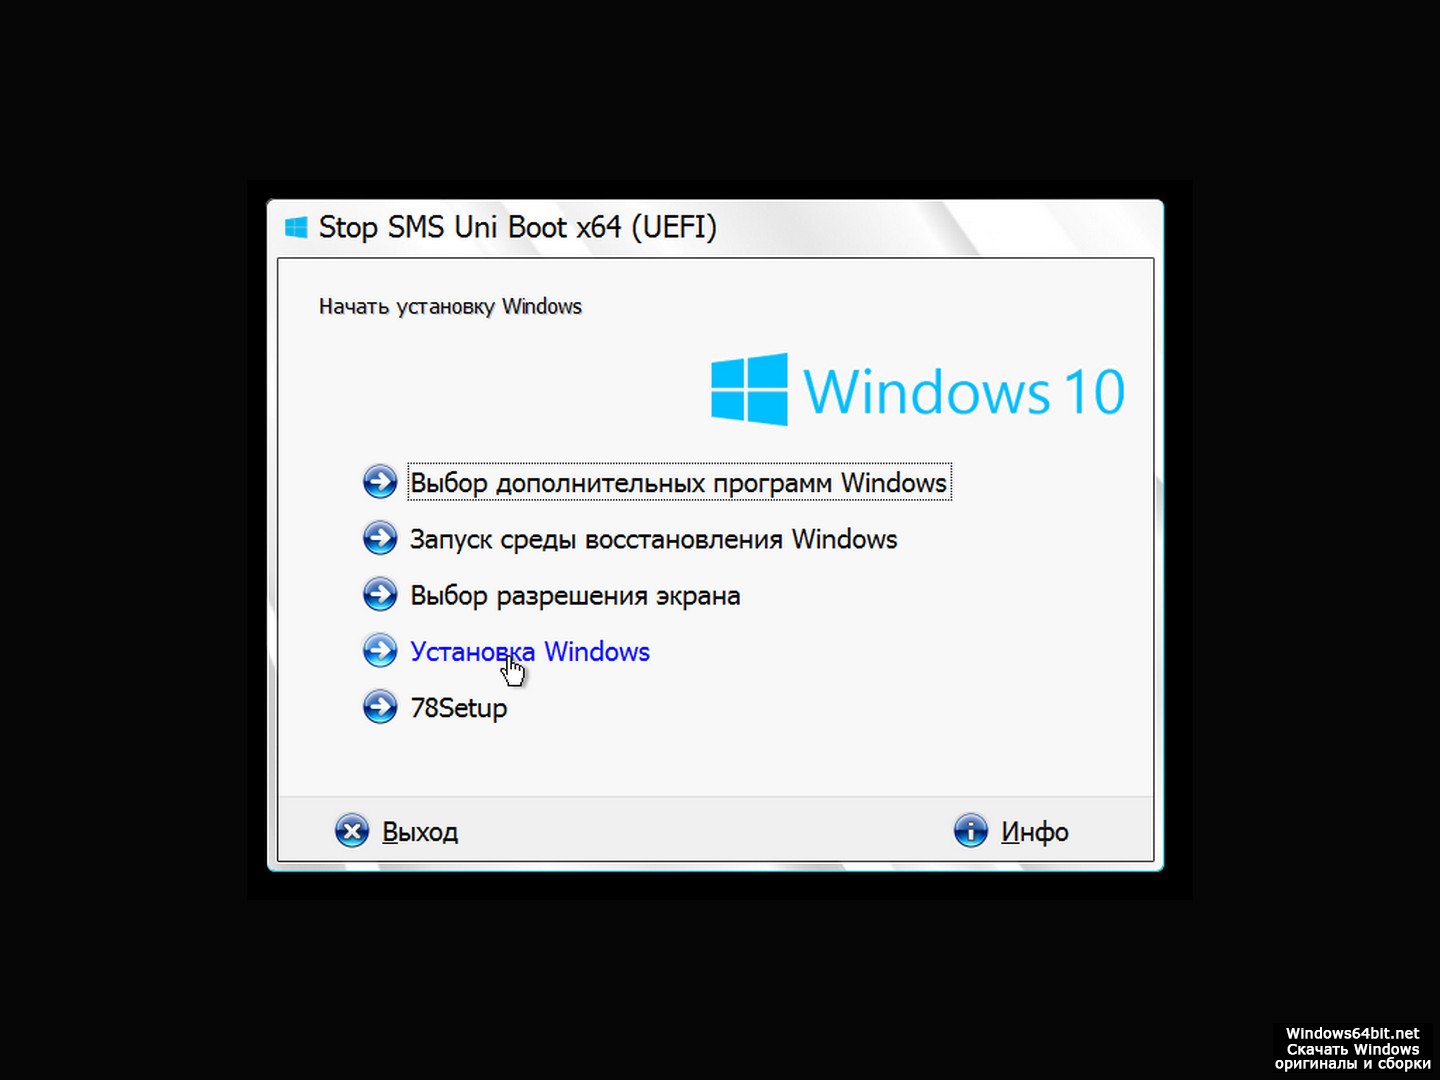 Бесплатная версия win 10 x64. Установочник виндовс 10. Образ виндовс 10. Windows 10 Pro. Windows 10 Pro x64 оригинальный образ.